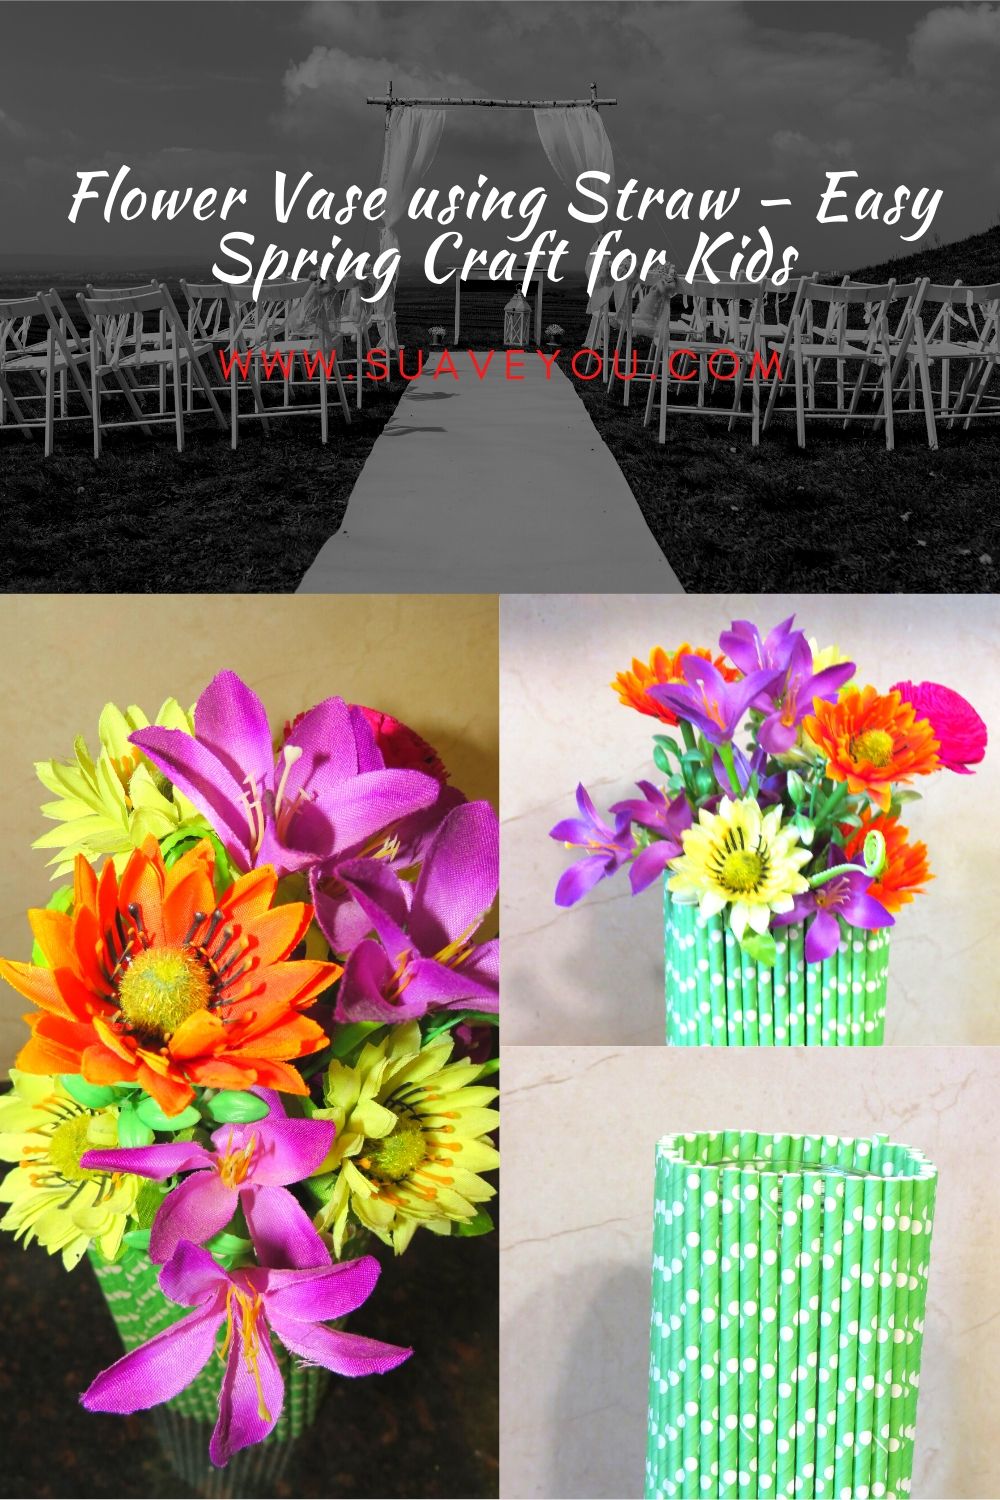 Flower Vase using Straw – Easy Spring Craft for Kids